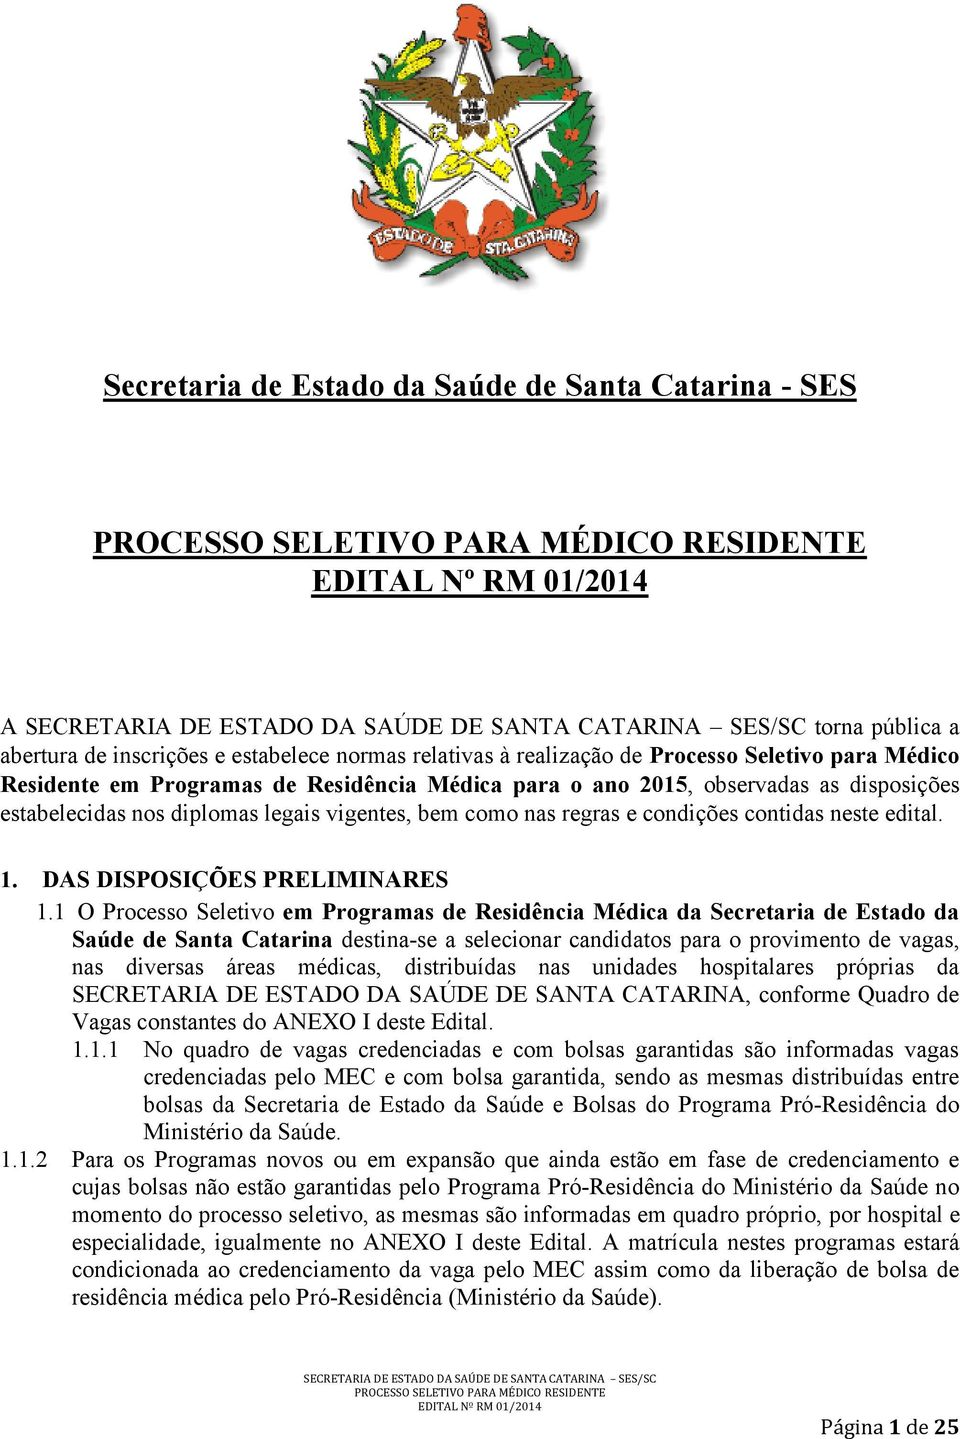 1 O Processo Seletivo em Programas de Residência Médica da Secretaria de Estado da Saúde de Santa Catarina destina-se a selecionar candidatos para o provimento de vagas, nas diversas áreas médicas,